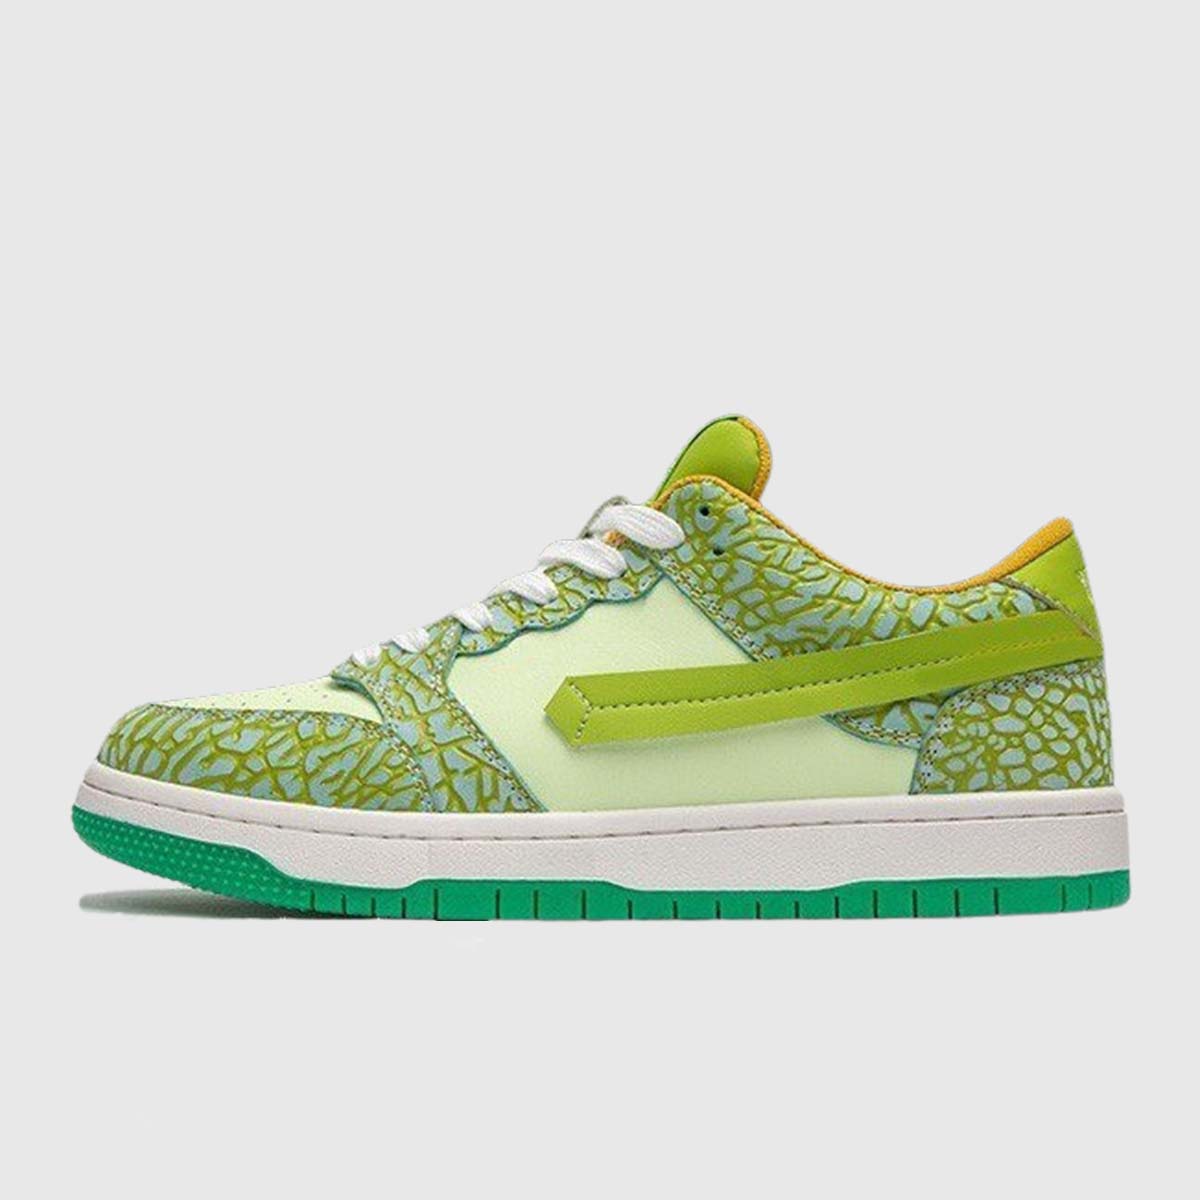 Neon Green Sneakers